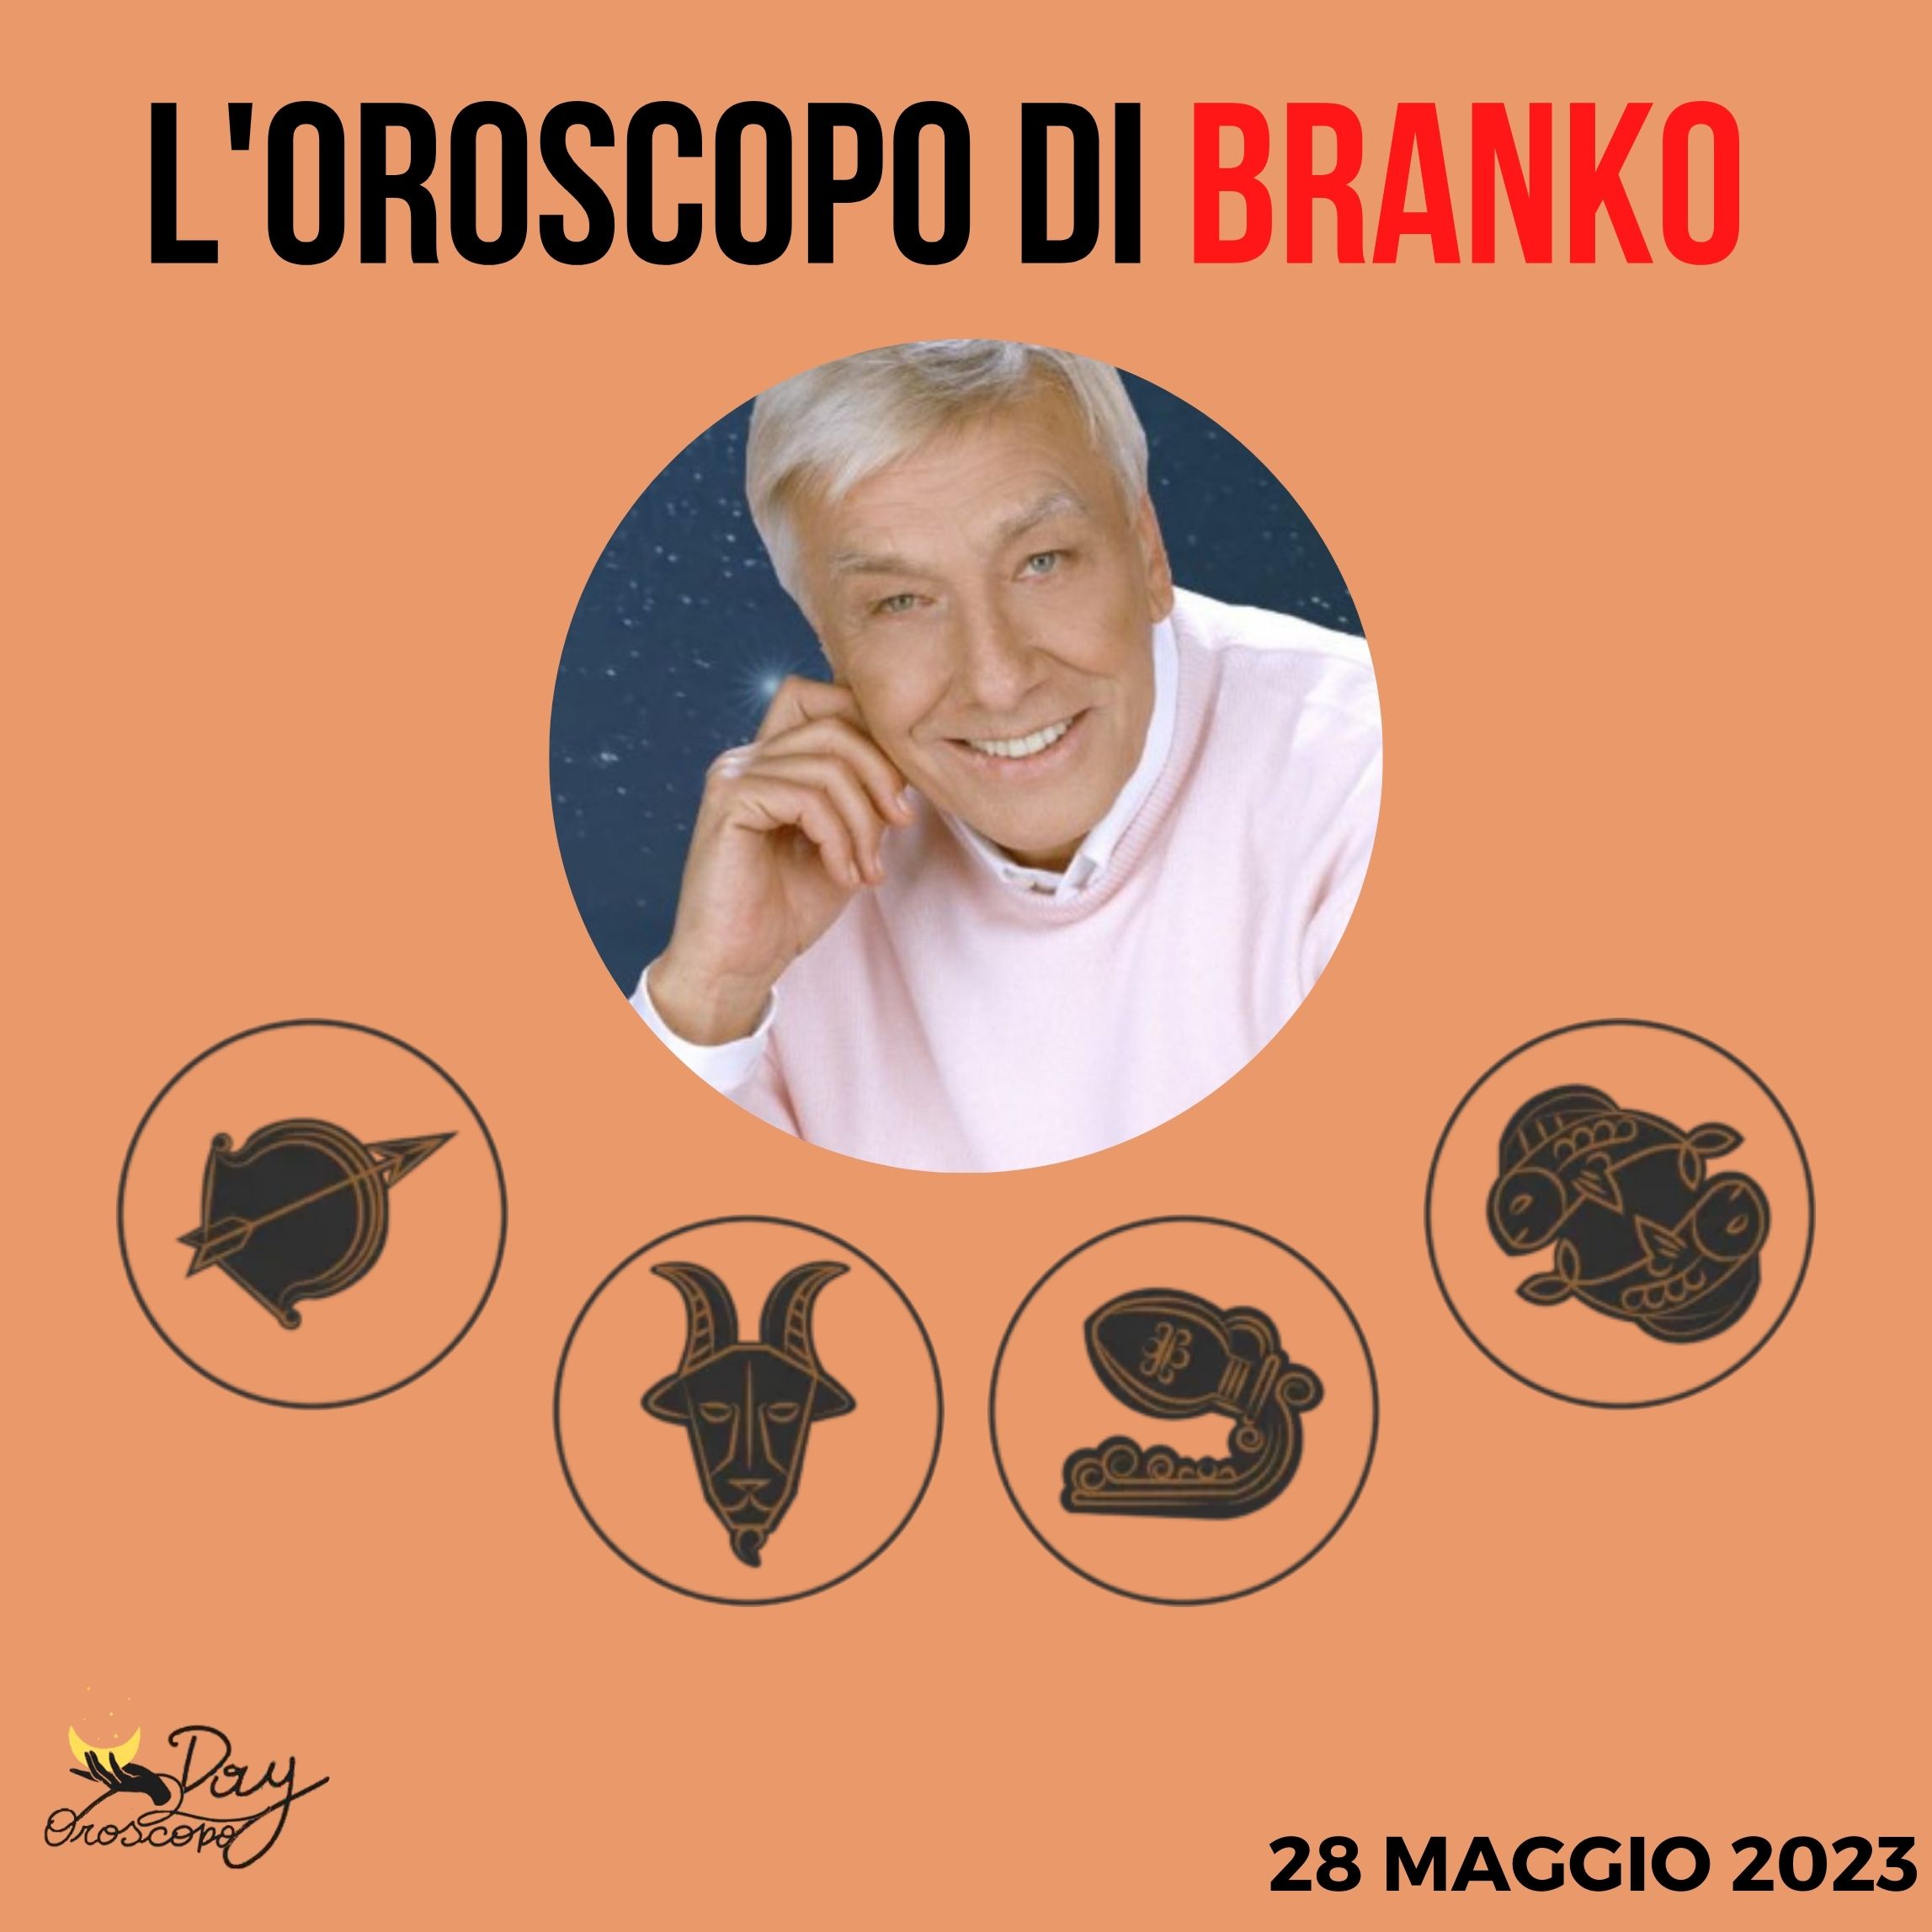 Oroscopo oggi domani Branko 28 maggio Sagittario Capricorno Acquario Pesci